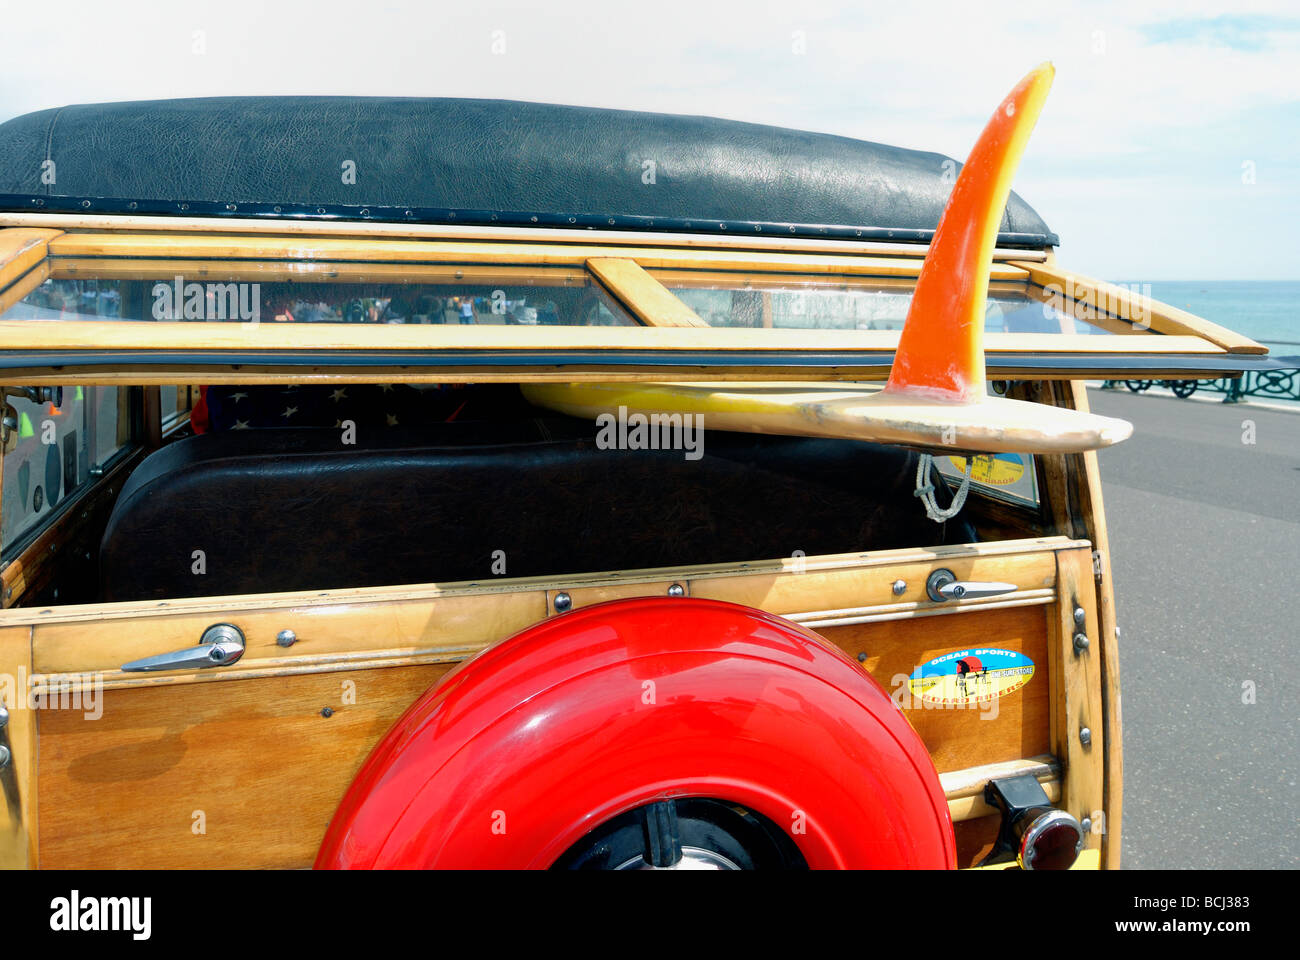 Una tavola da surf caricata su una classica vecchia auto Foto Stock